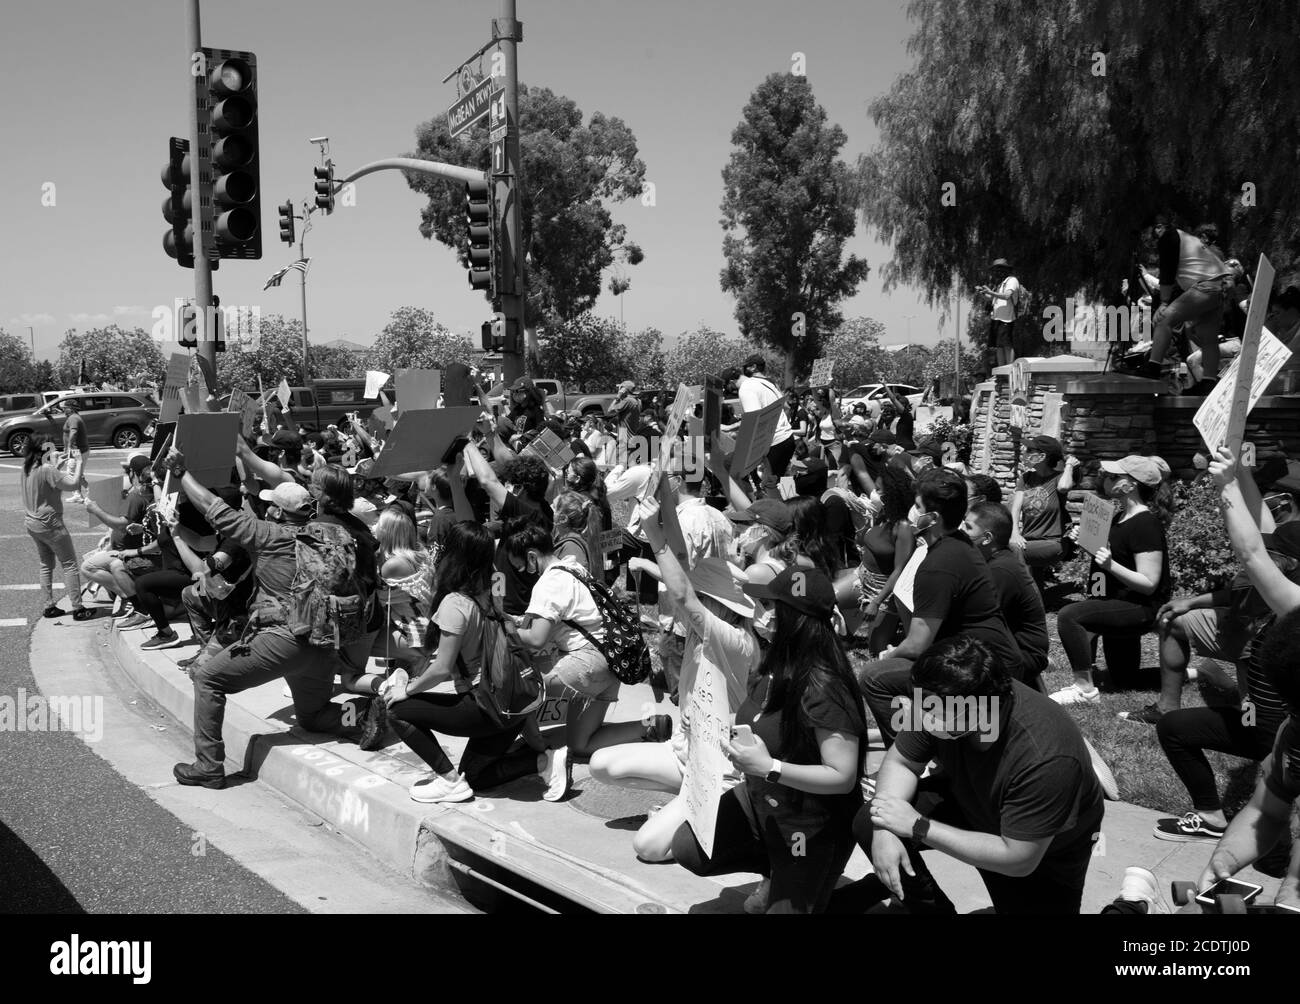 2020 États-Unis California Black Lives Matter manifestations. La Garde nationale de l'armée et le shérif du comté de Los Angeles observent les manifestants lors des manifestations. Banque D'Images